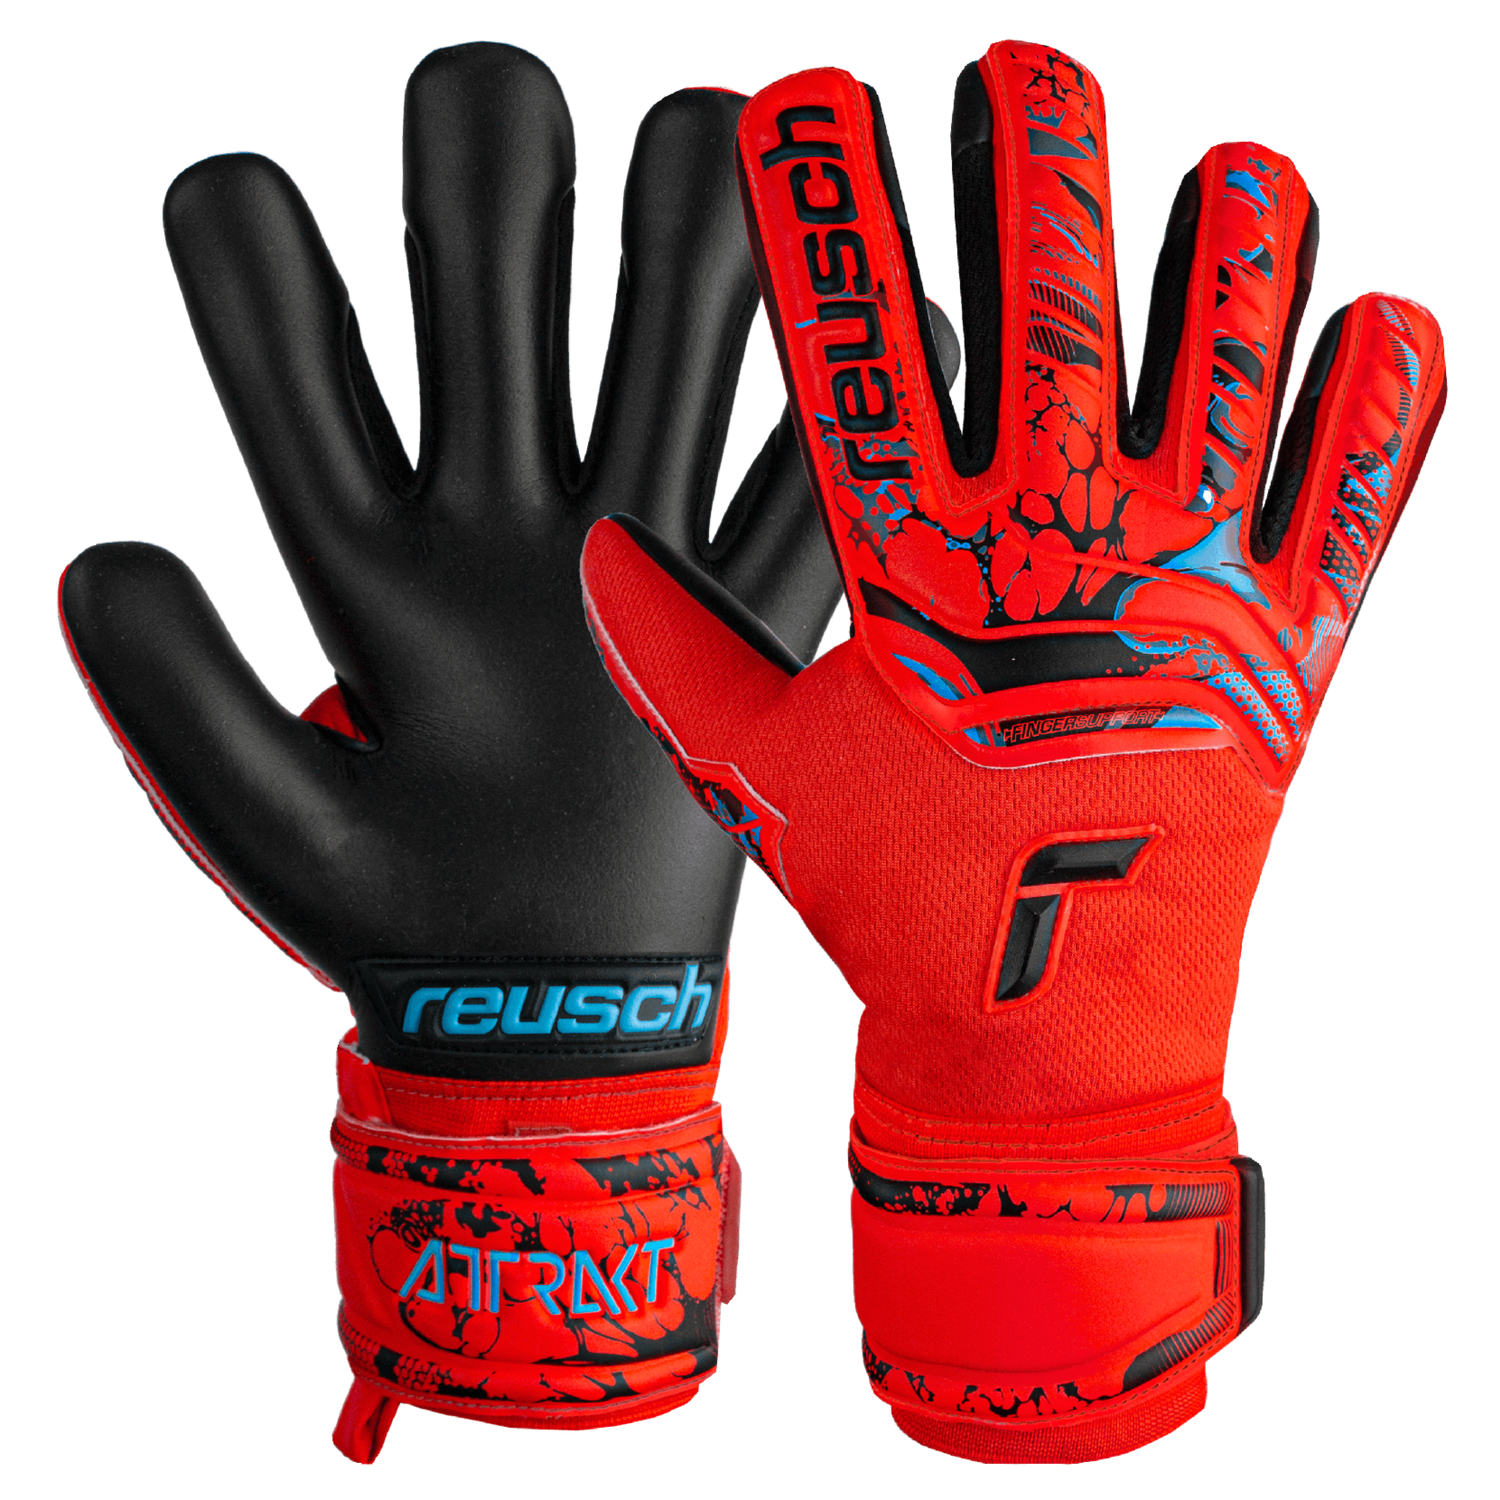 Reusch JR Attrakt Grip Evolution FS Goalkeeper Gloves (Pair)